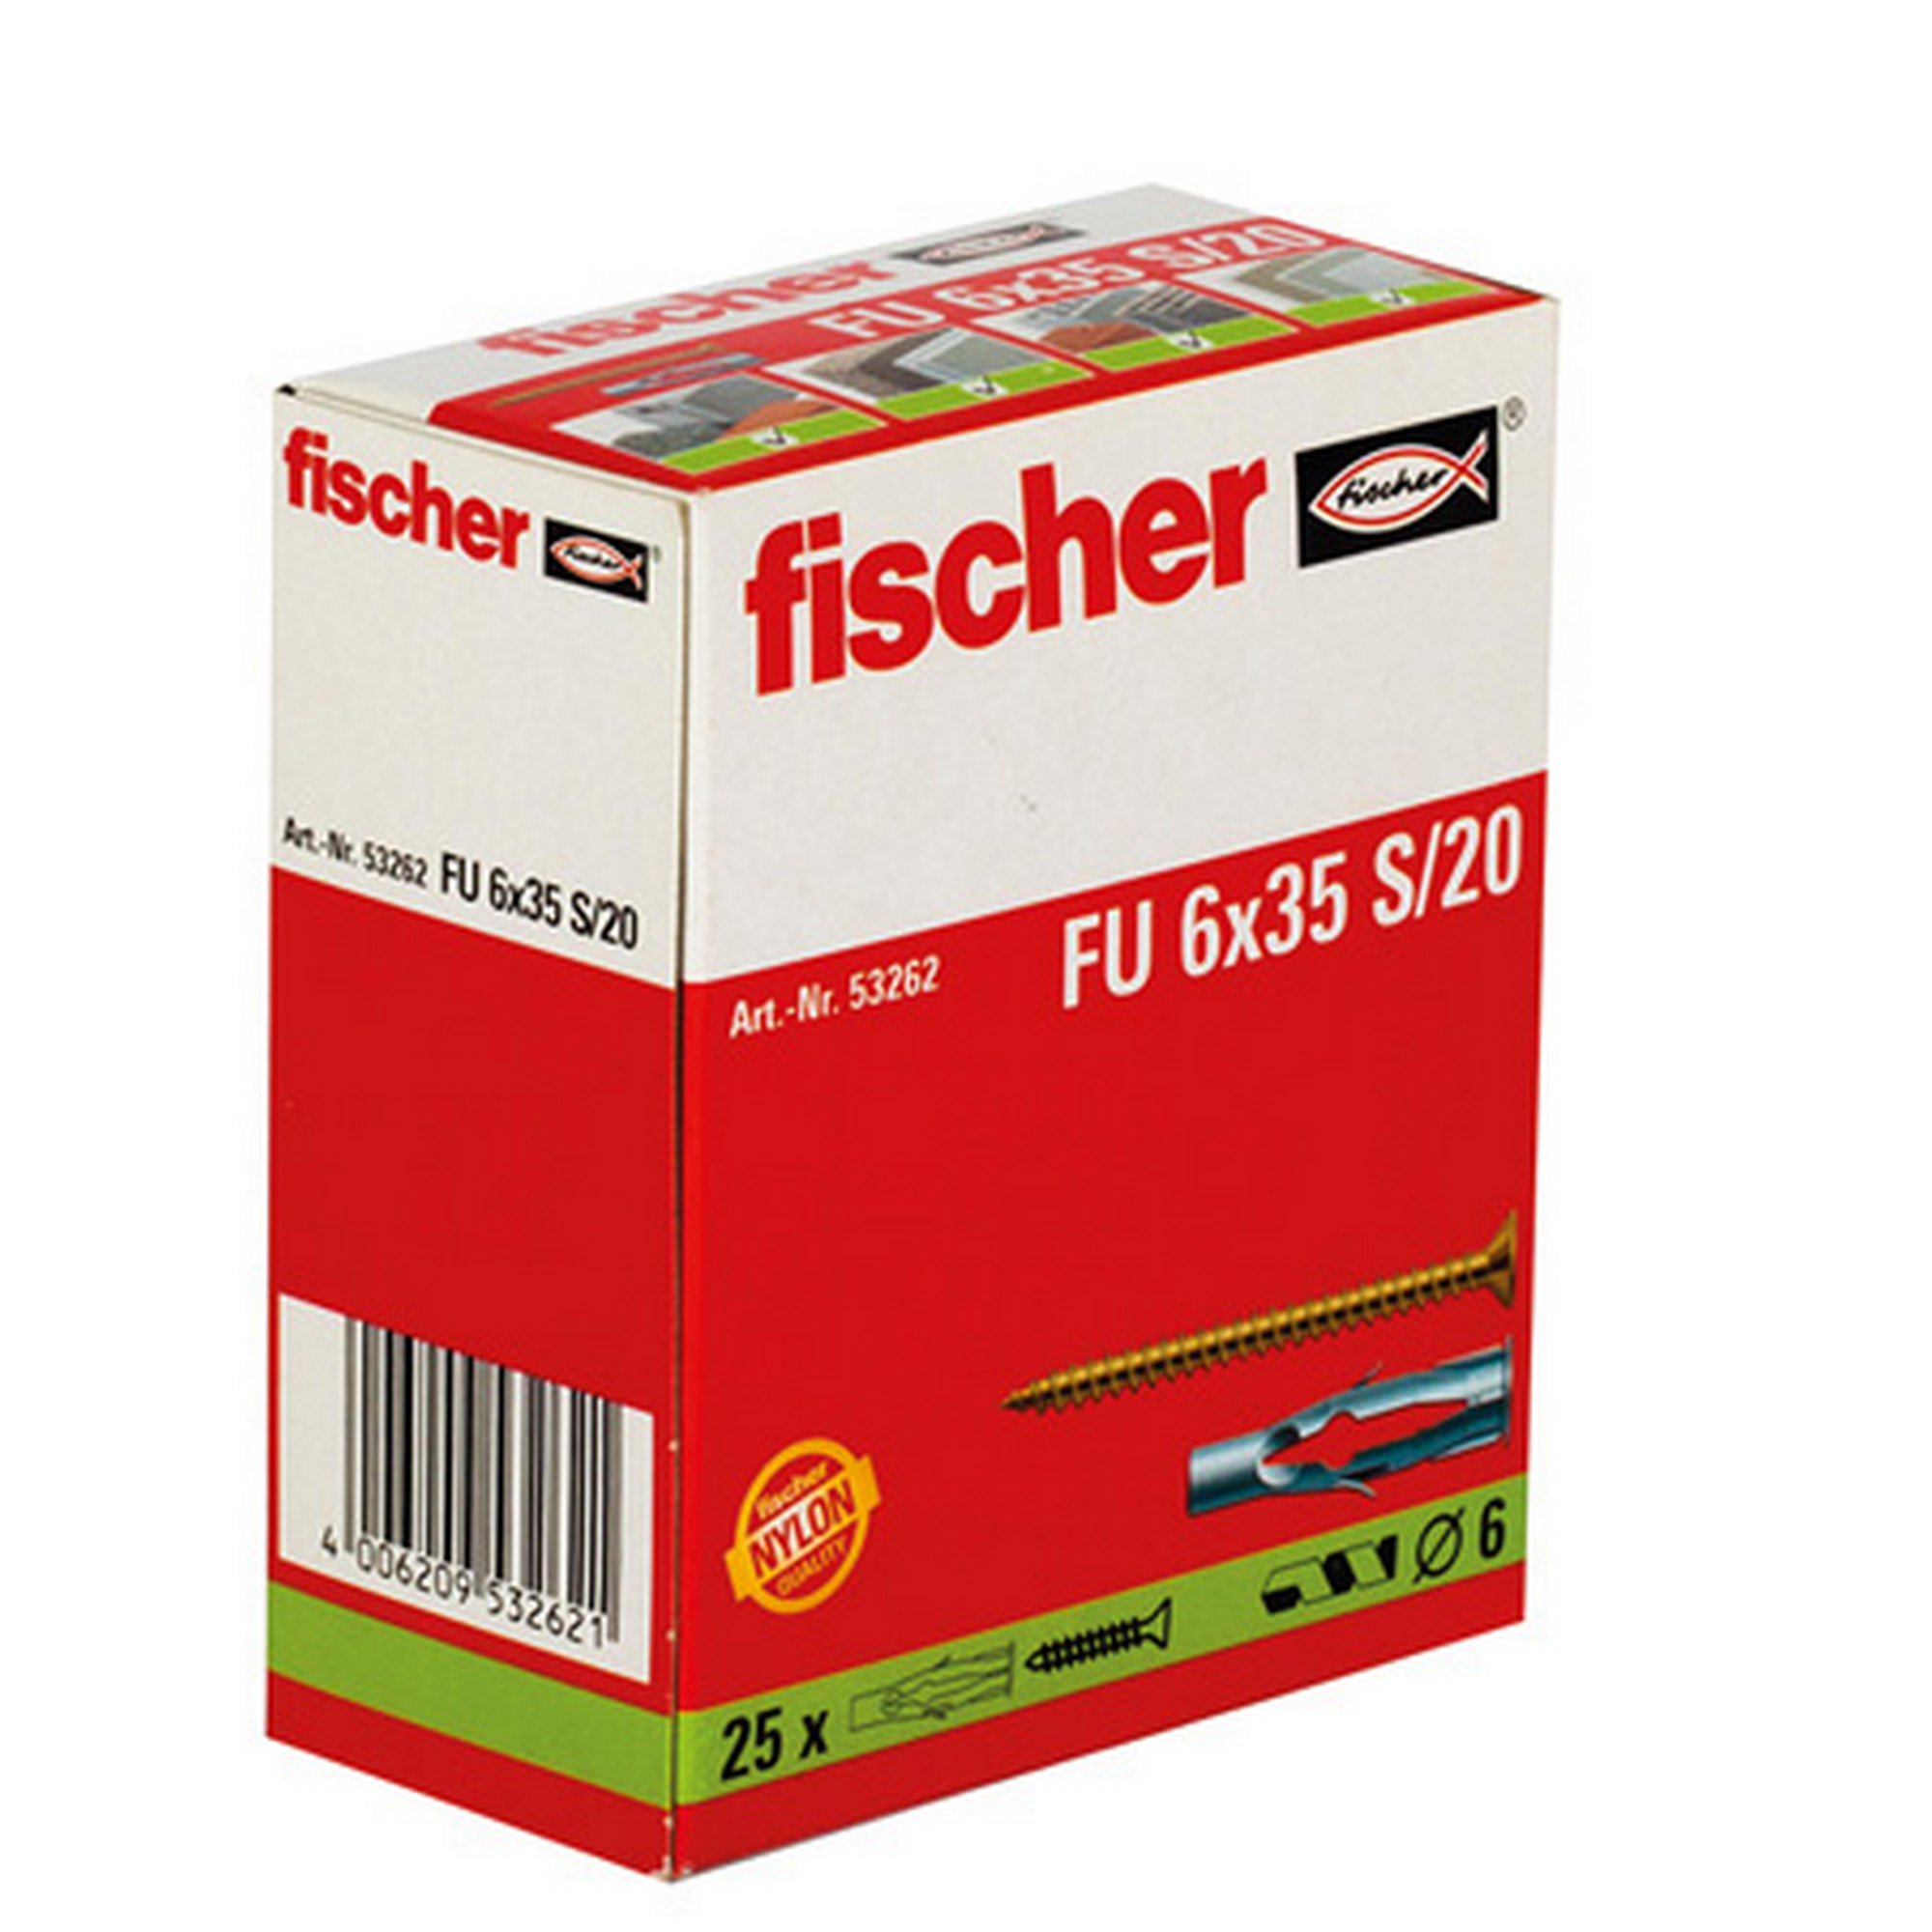 fischer Universaldübel FU 6 x 35 S/20 mit Schraube 25 Stück + product picture